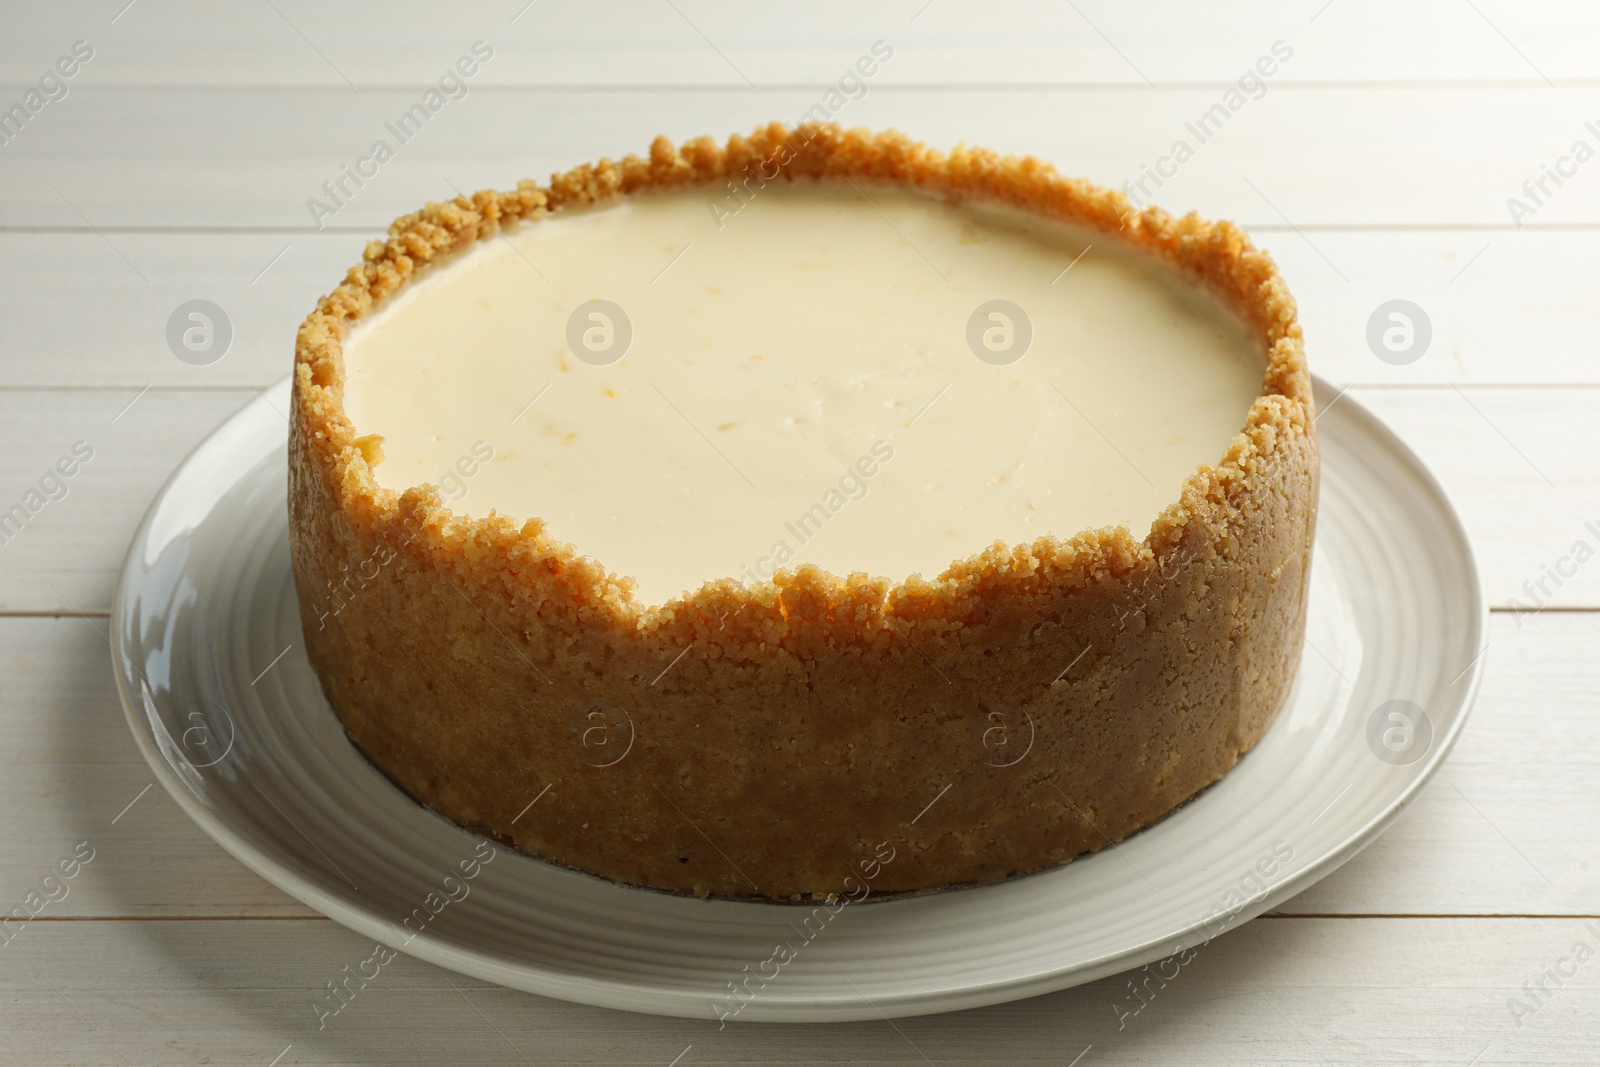 Photo of Tasty vegan tofu cheesecake on white wooden table